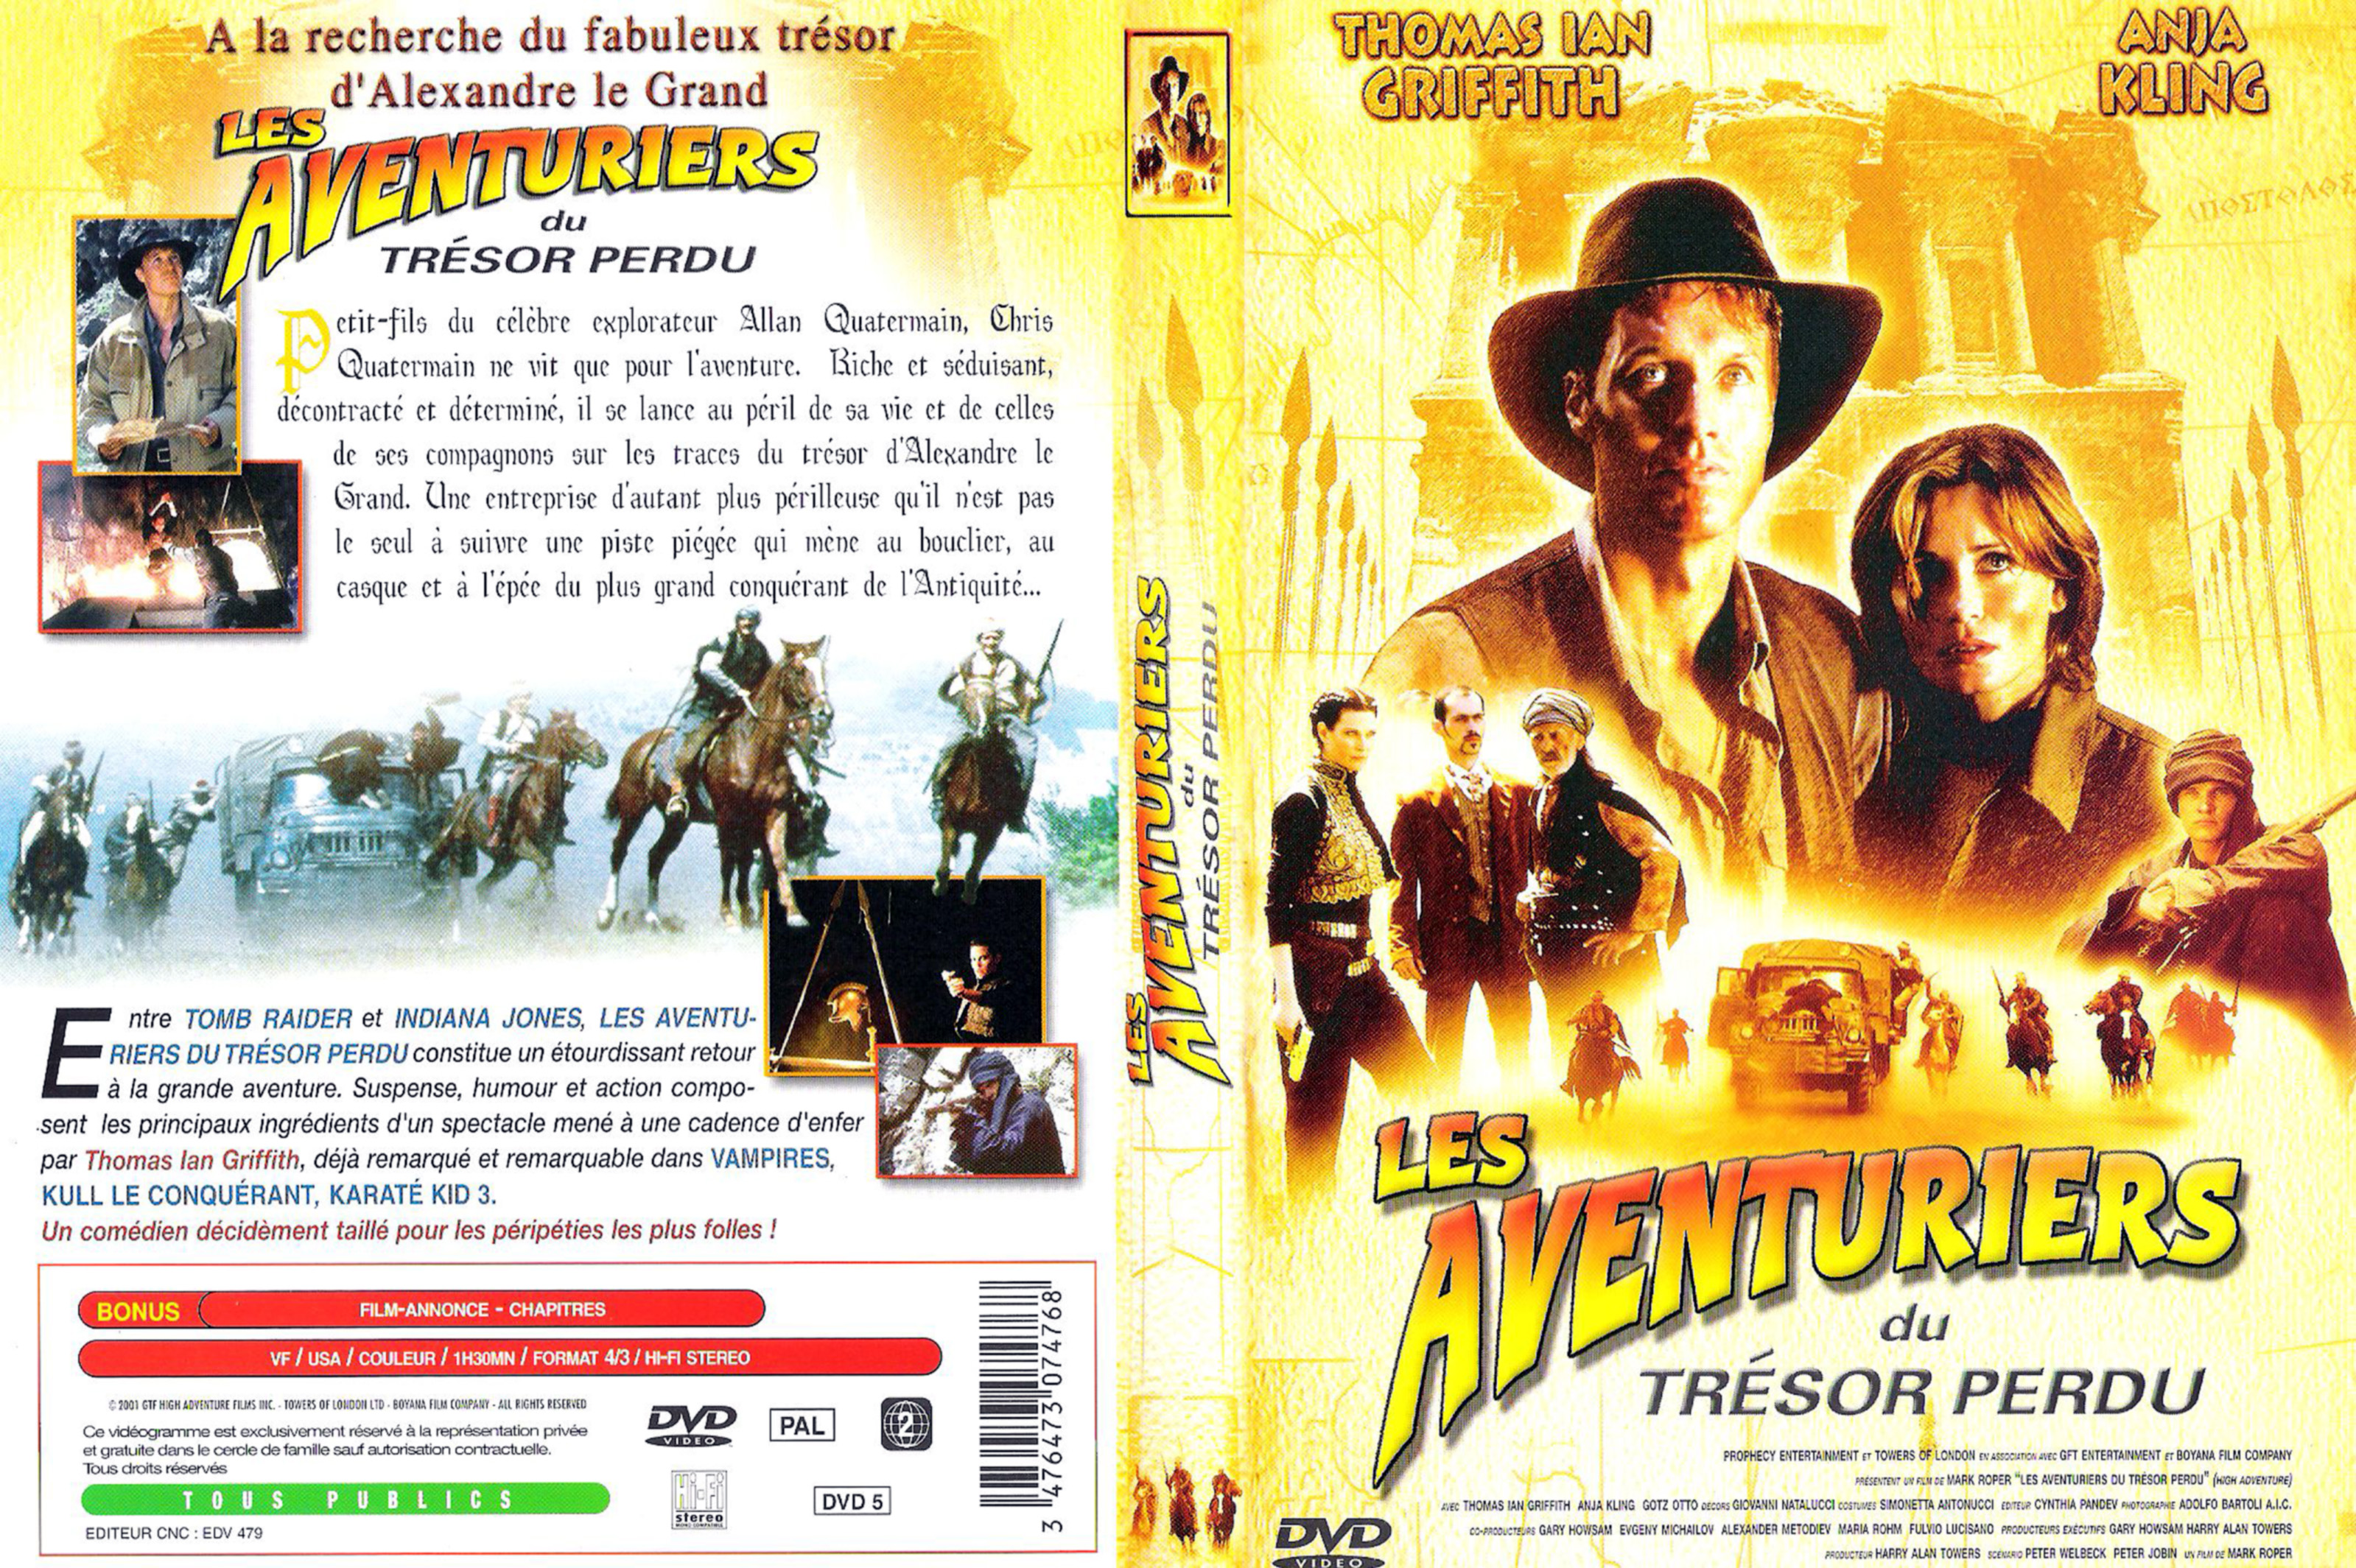 Jaquette DVD Les aventuriers du tresor perdu v2